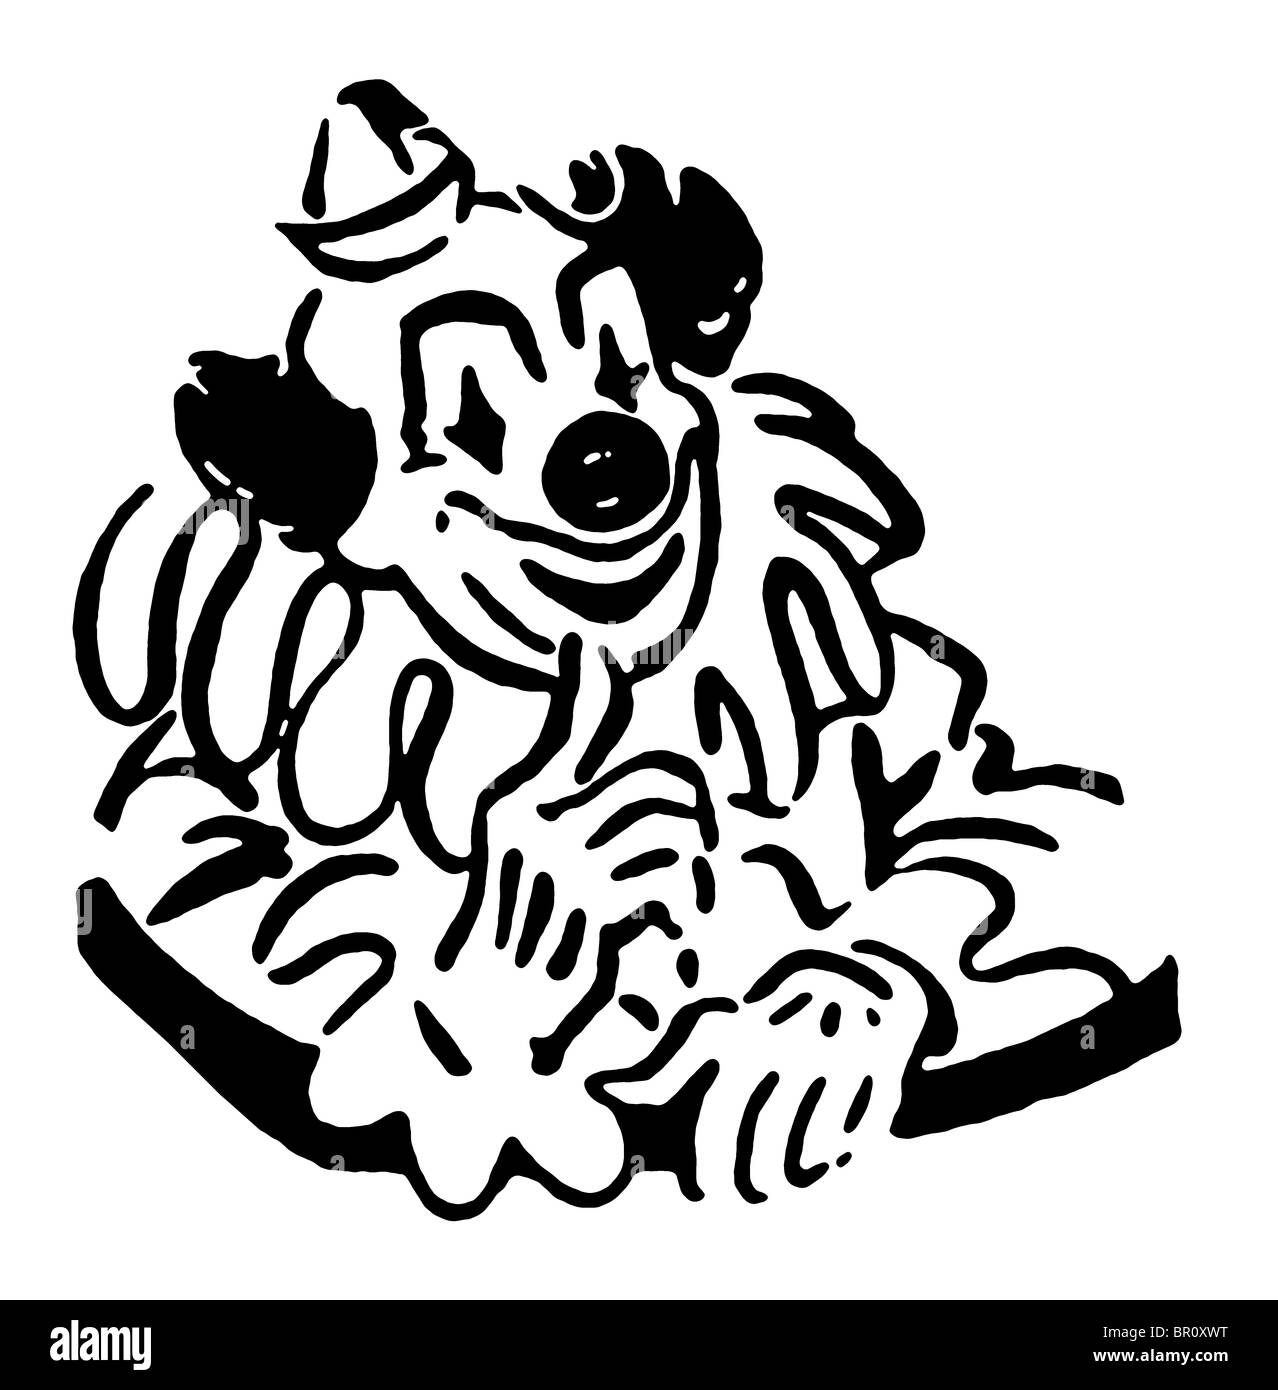 Une version noir et blanc d'un cartoon comme illustration d'un clown Banque D'Images